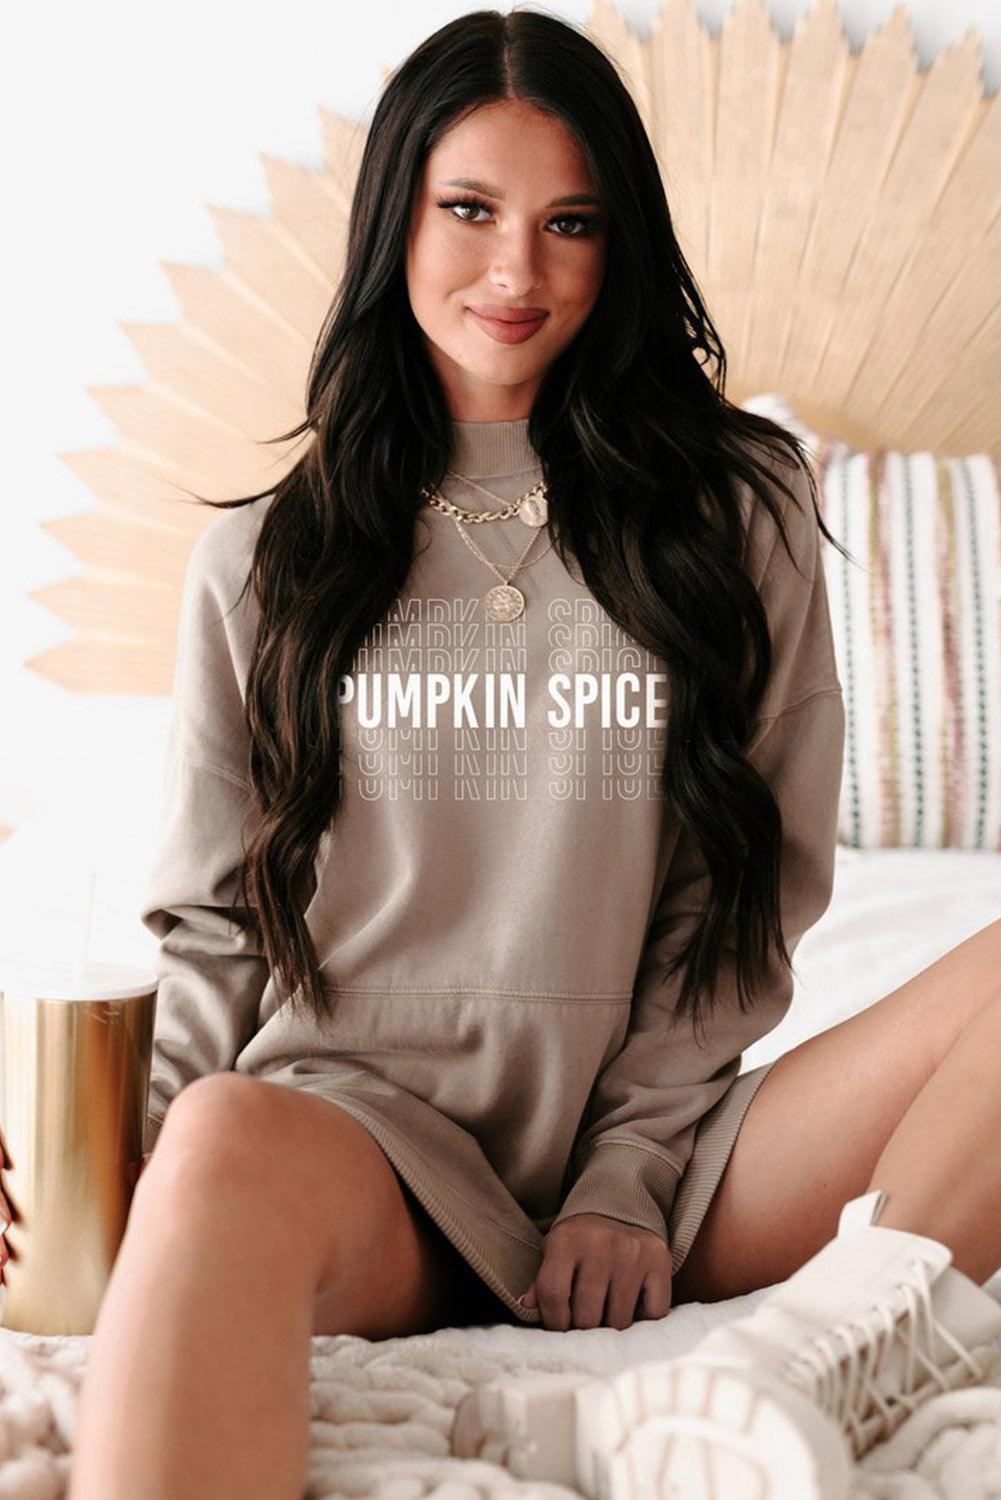 Khaki Pumpkin Spice Print Ribbed Trim Sweatshirt Dress - L & M Kee, LLC